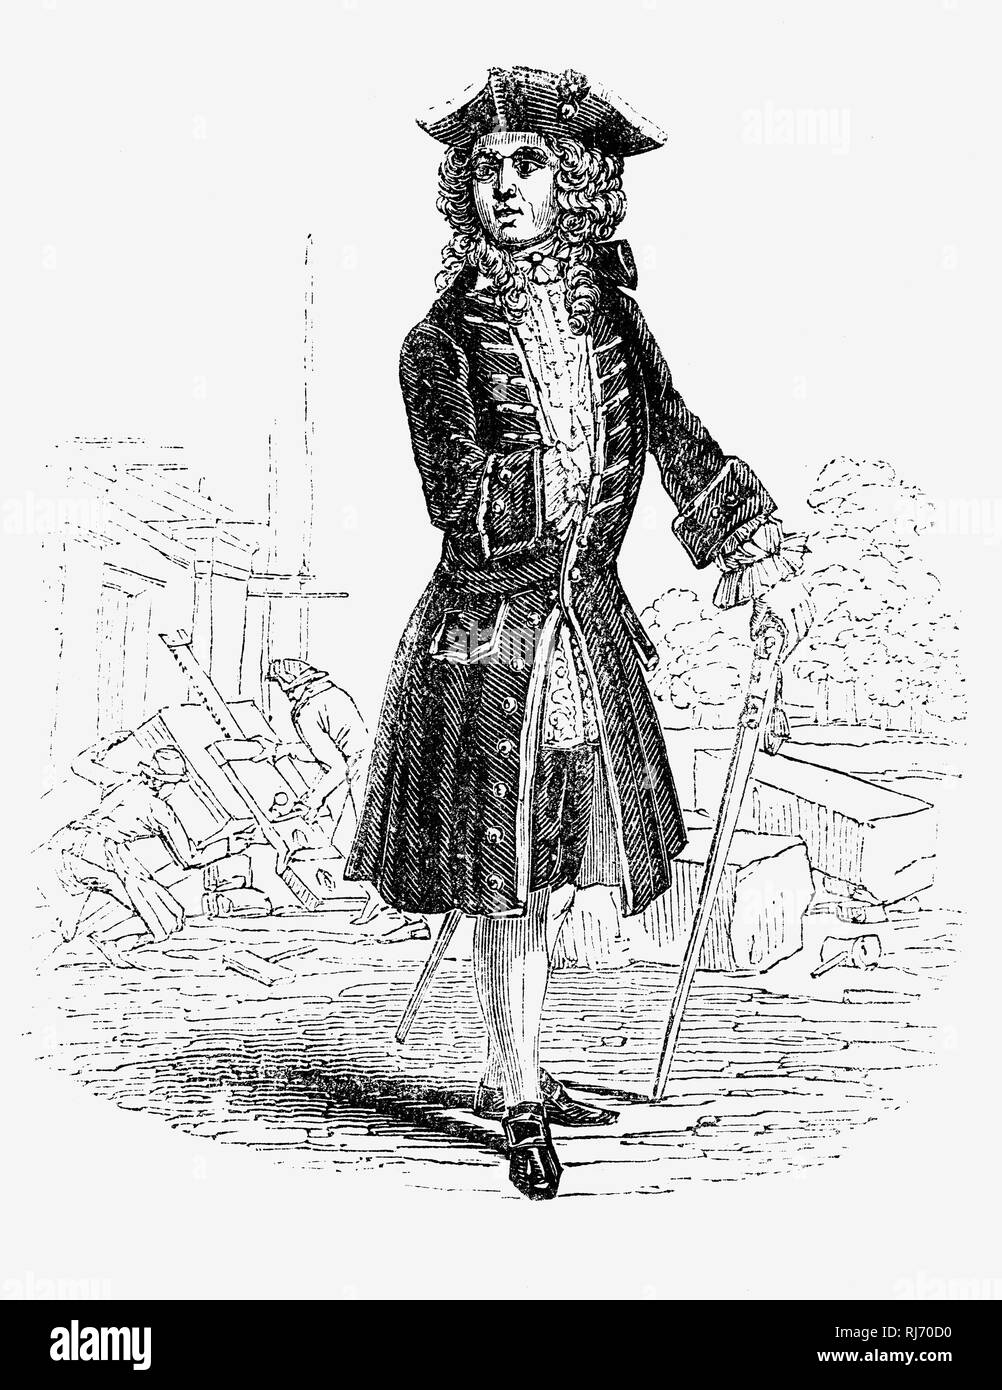 Sir John Vanbrugh (1664-1726) était un architecte anglais et le dramaturge, peut-être mieux connu comme le concepteur de Blenheim Palace et le château Howard. Comme un jeune homme et un whig engagé, il a fait partie du régime de renverser Jacques II, mettre William III sur le trône et à protéger la démocratie parlementaire anglaise, et il a été emprisonné par les Français comme un prisonnier politique. Il plus tard a écrit deux comédies argumentatif et franc, la restauration de la rechute (1696) et la femme (1697) a provoqué, qui sont devenus l'étape durable favoris mais à l'origine suscité beaucoup de controverse. Banque D'Images